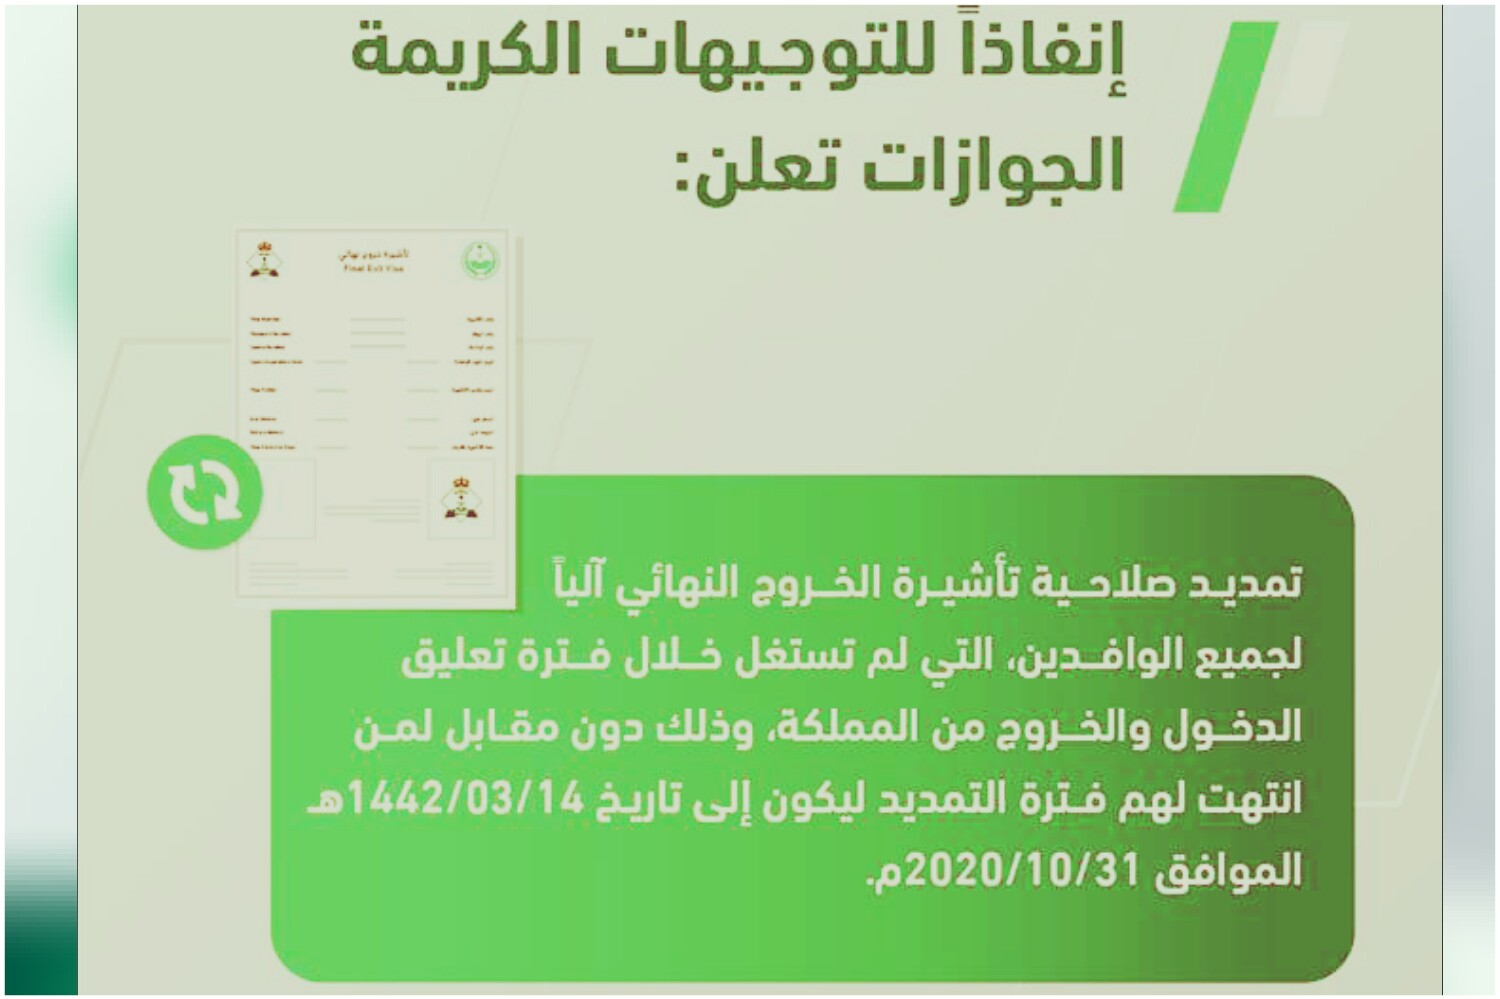 تمديد تأشيرة الخروج النهائي آليآ عن طريق المديرية العامة للجوازات السعودية مجانآ دون أي تكلفة